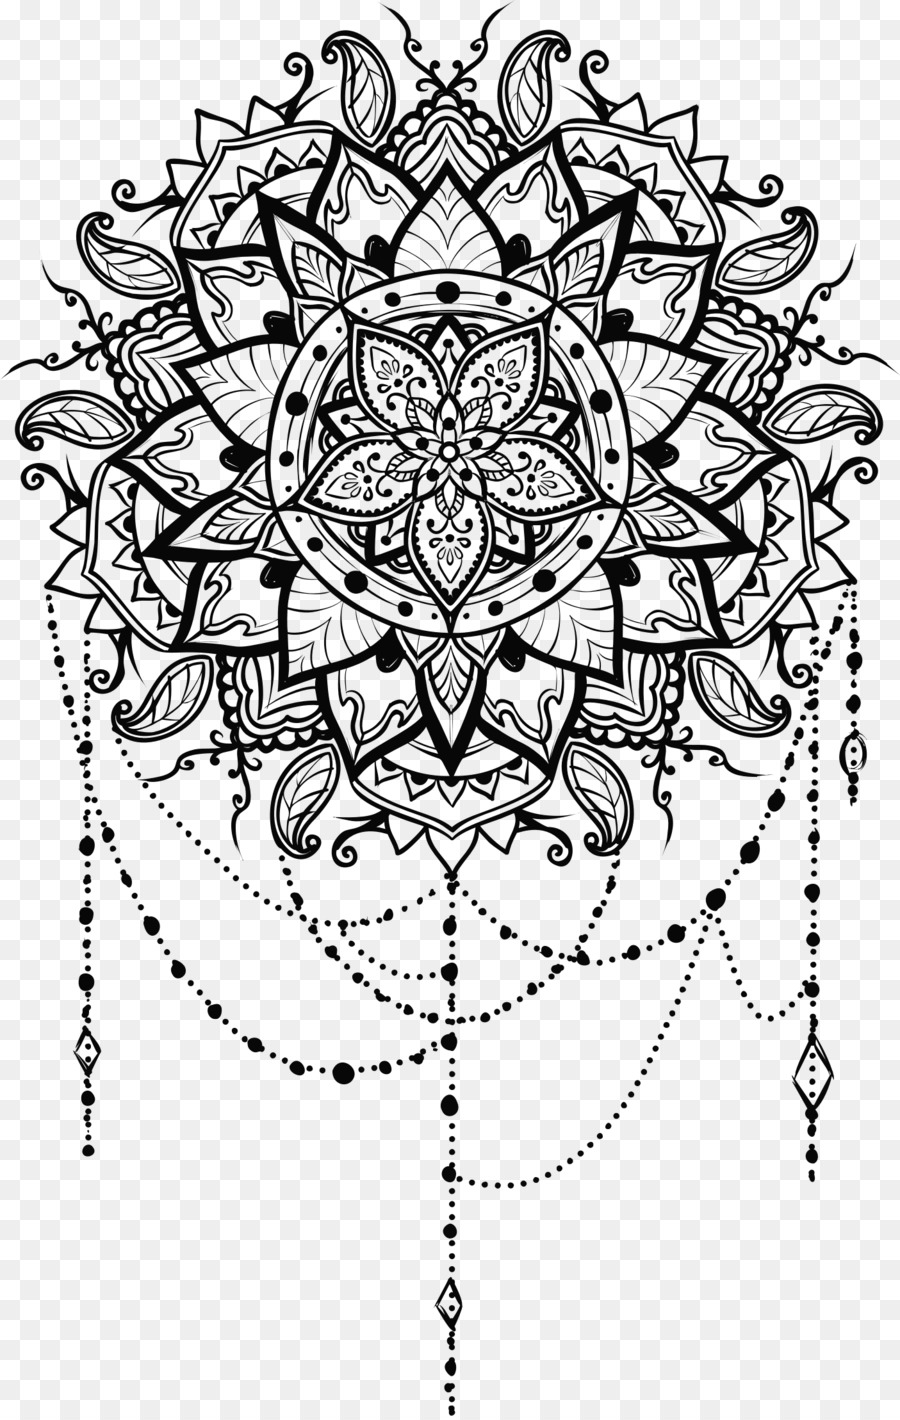 Mandala Drawing Line art Coloring book Illustration - ramadhan flower png mandala png download - 1405*2211 - Free Transparent Mandala png Download.